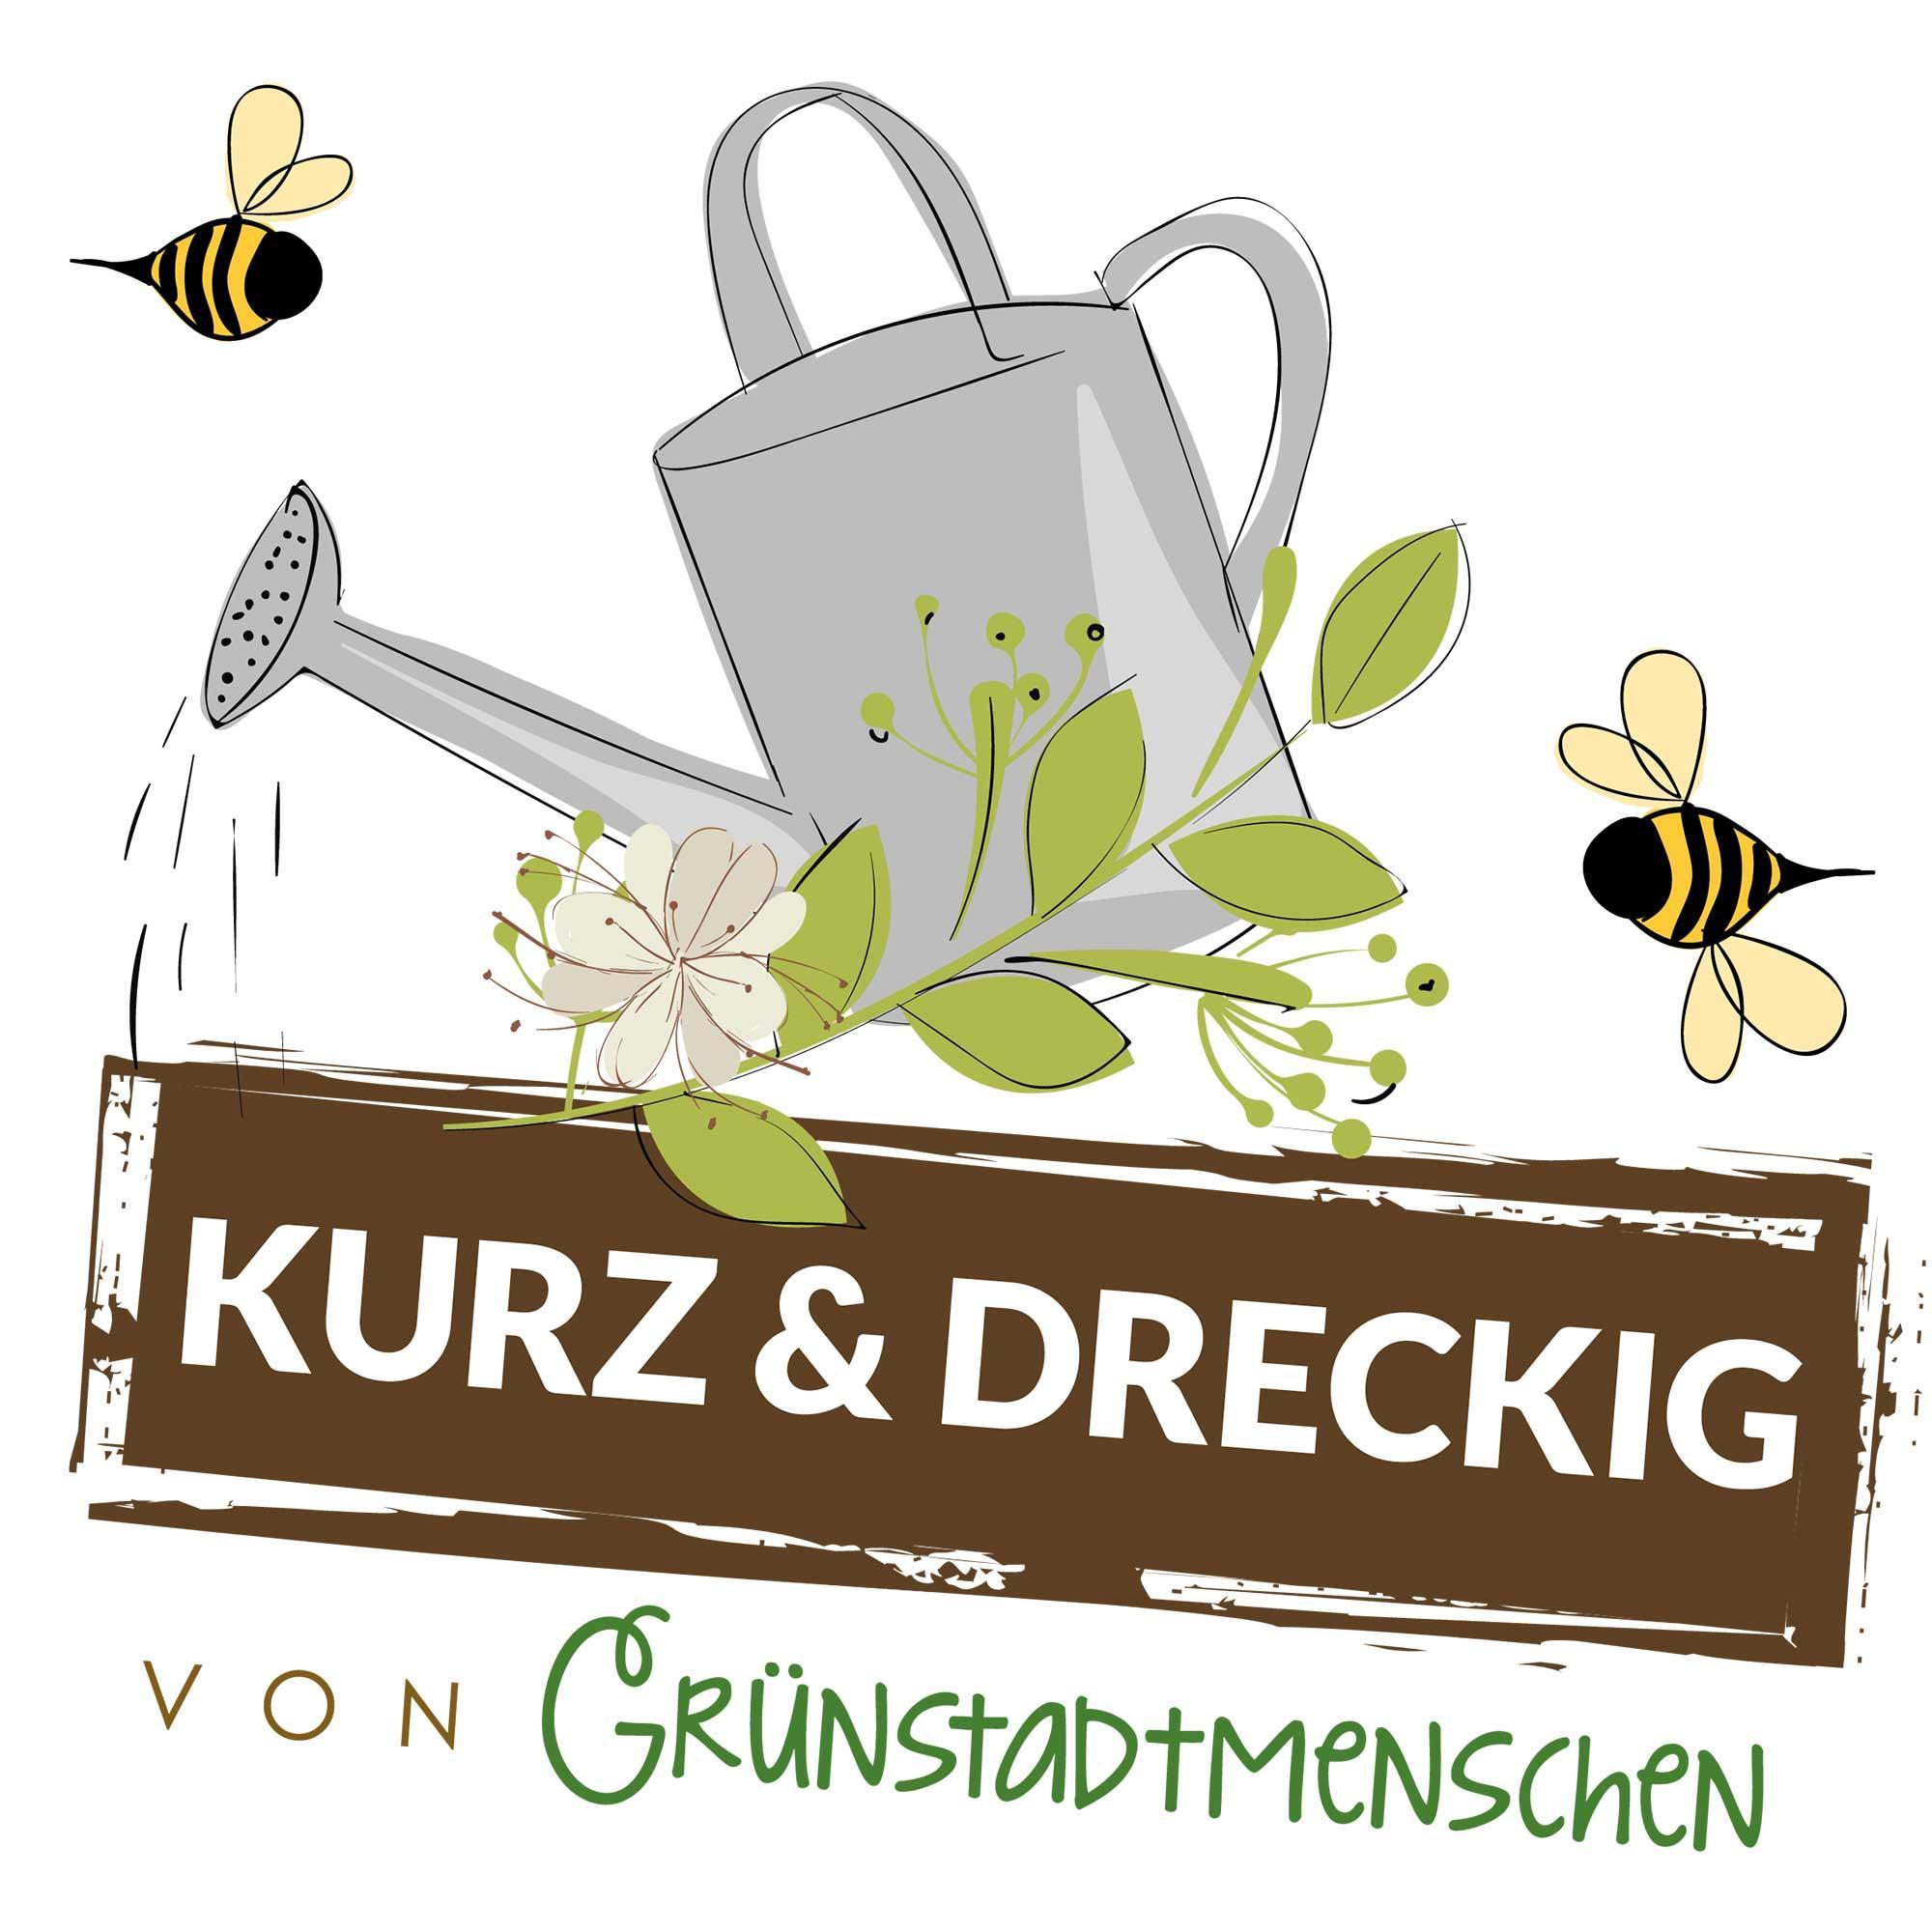 #64 Kurz & dreckig: Karinas Gartentipps für den August